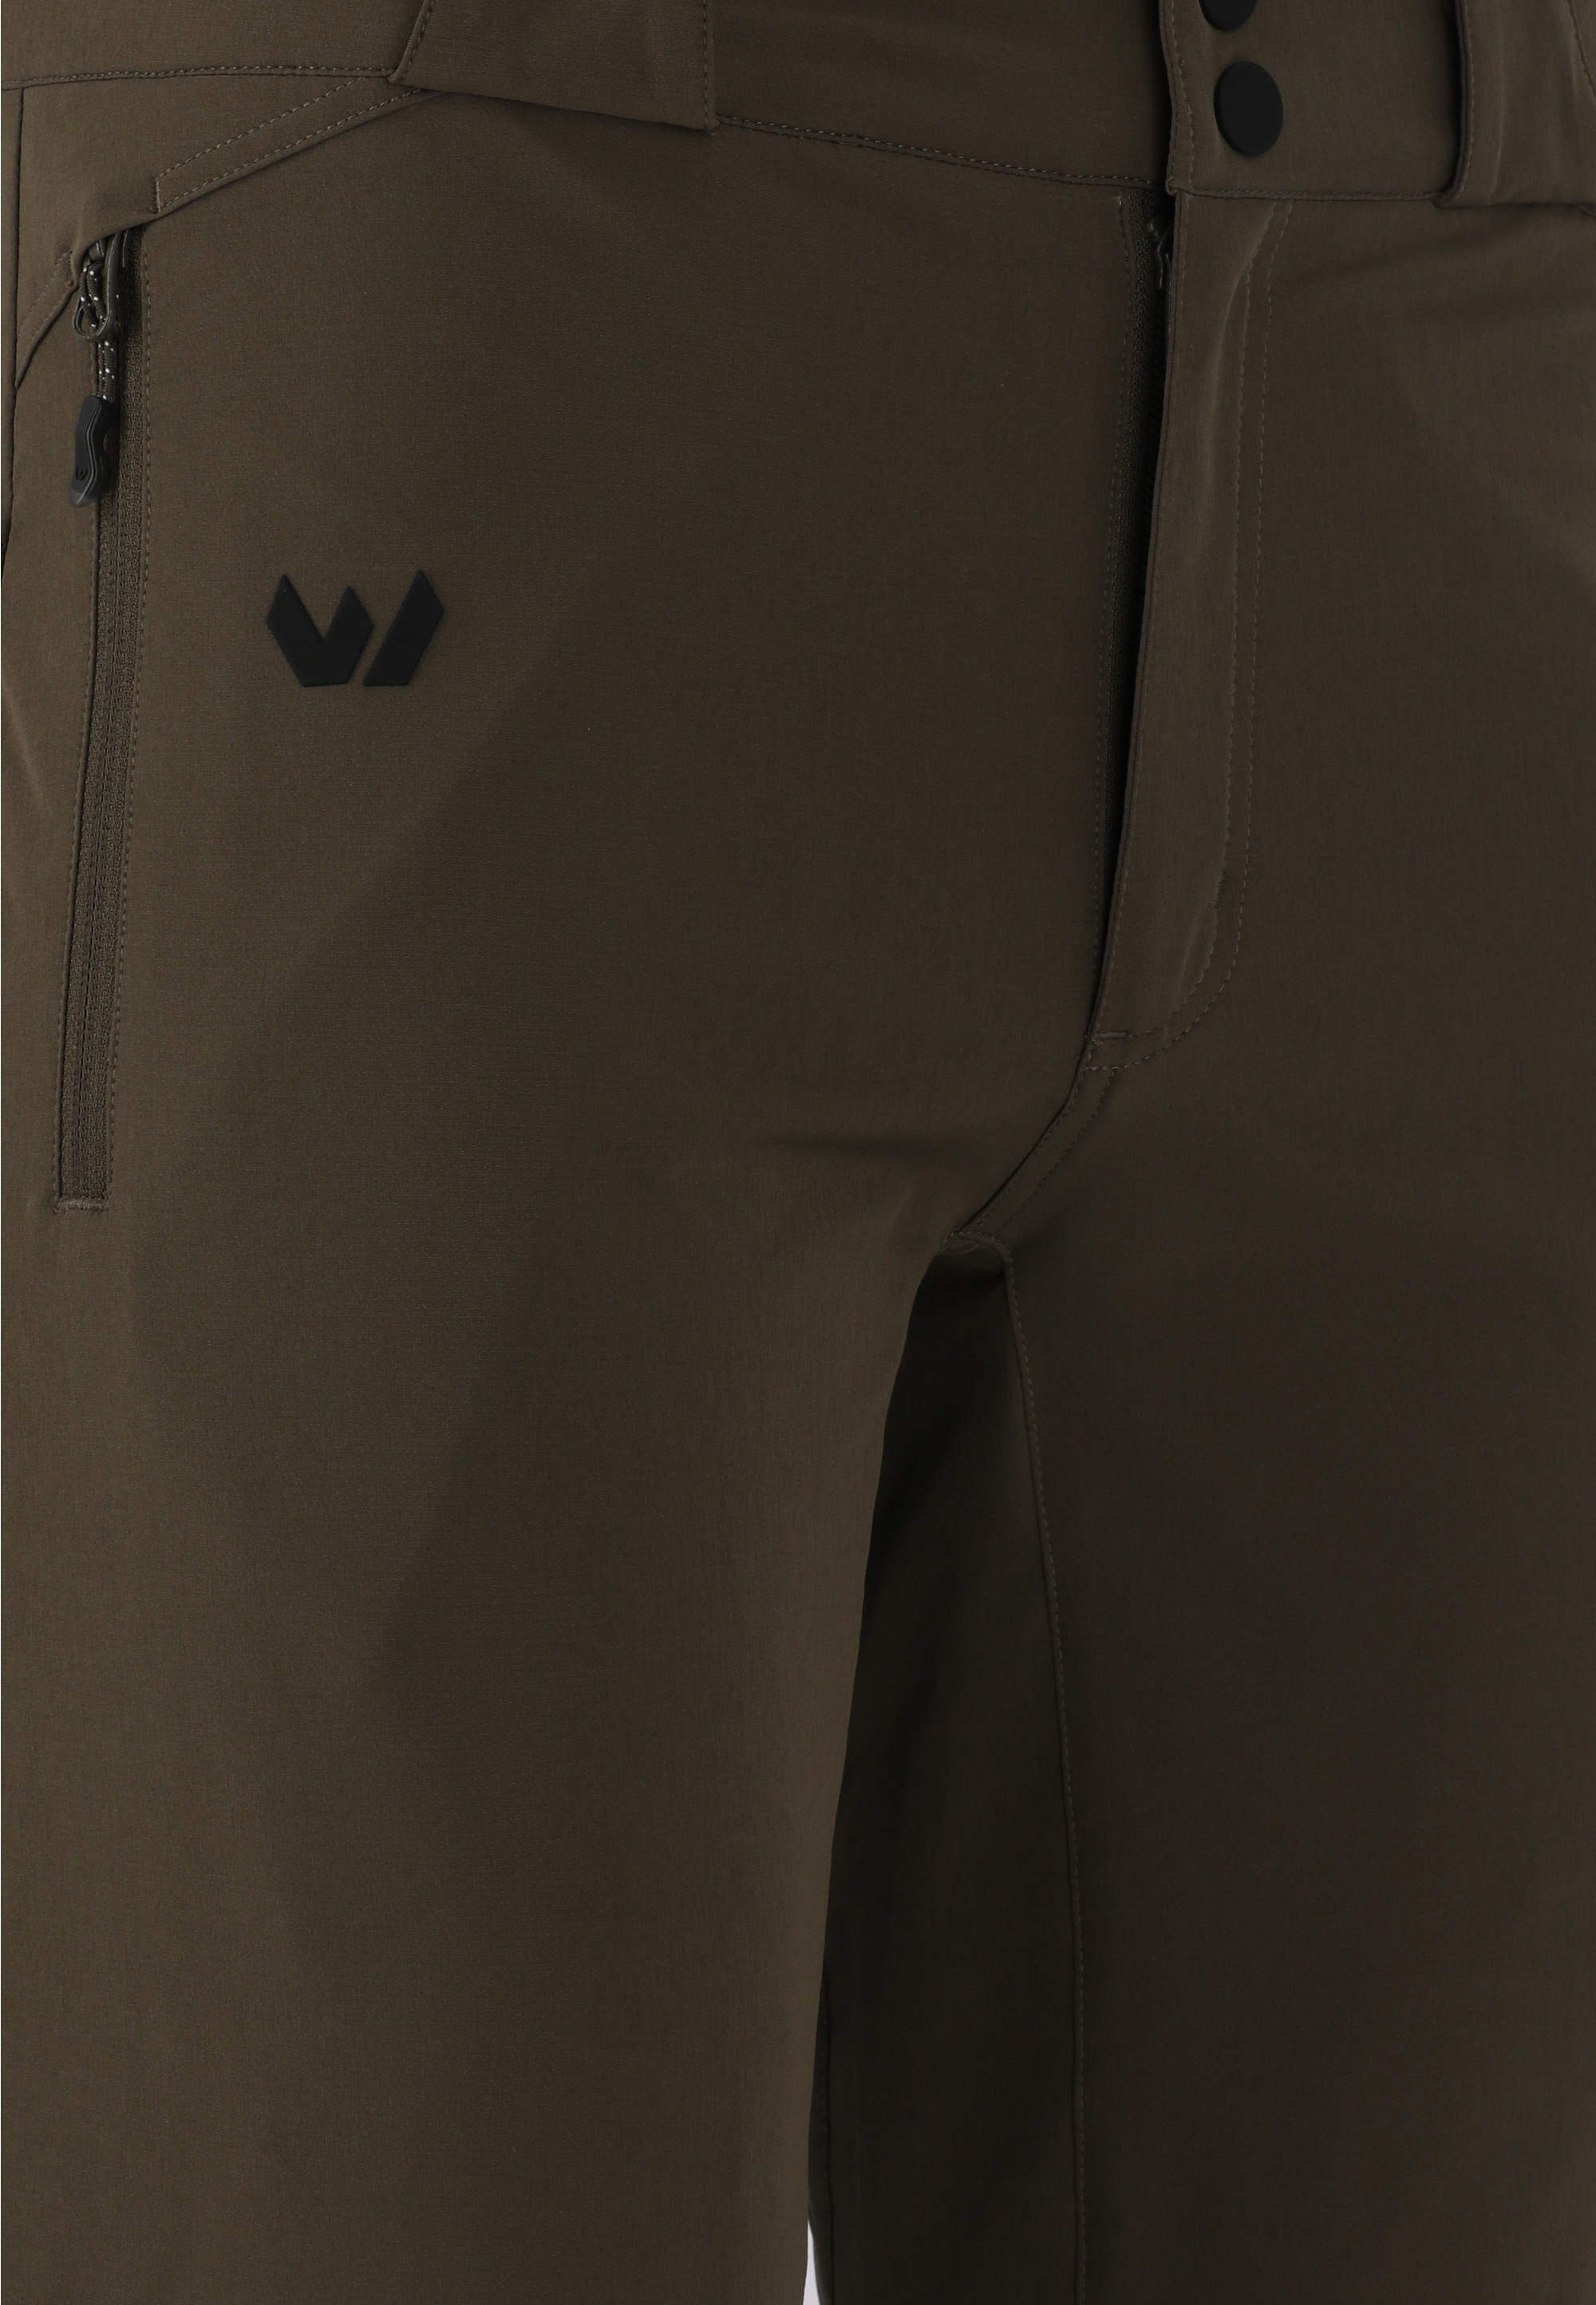 WHISTLER Outdoorhose »Gerdi«, zur Verwendung als Hose oder Shorts dank Zip-Off-Funktion